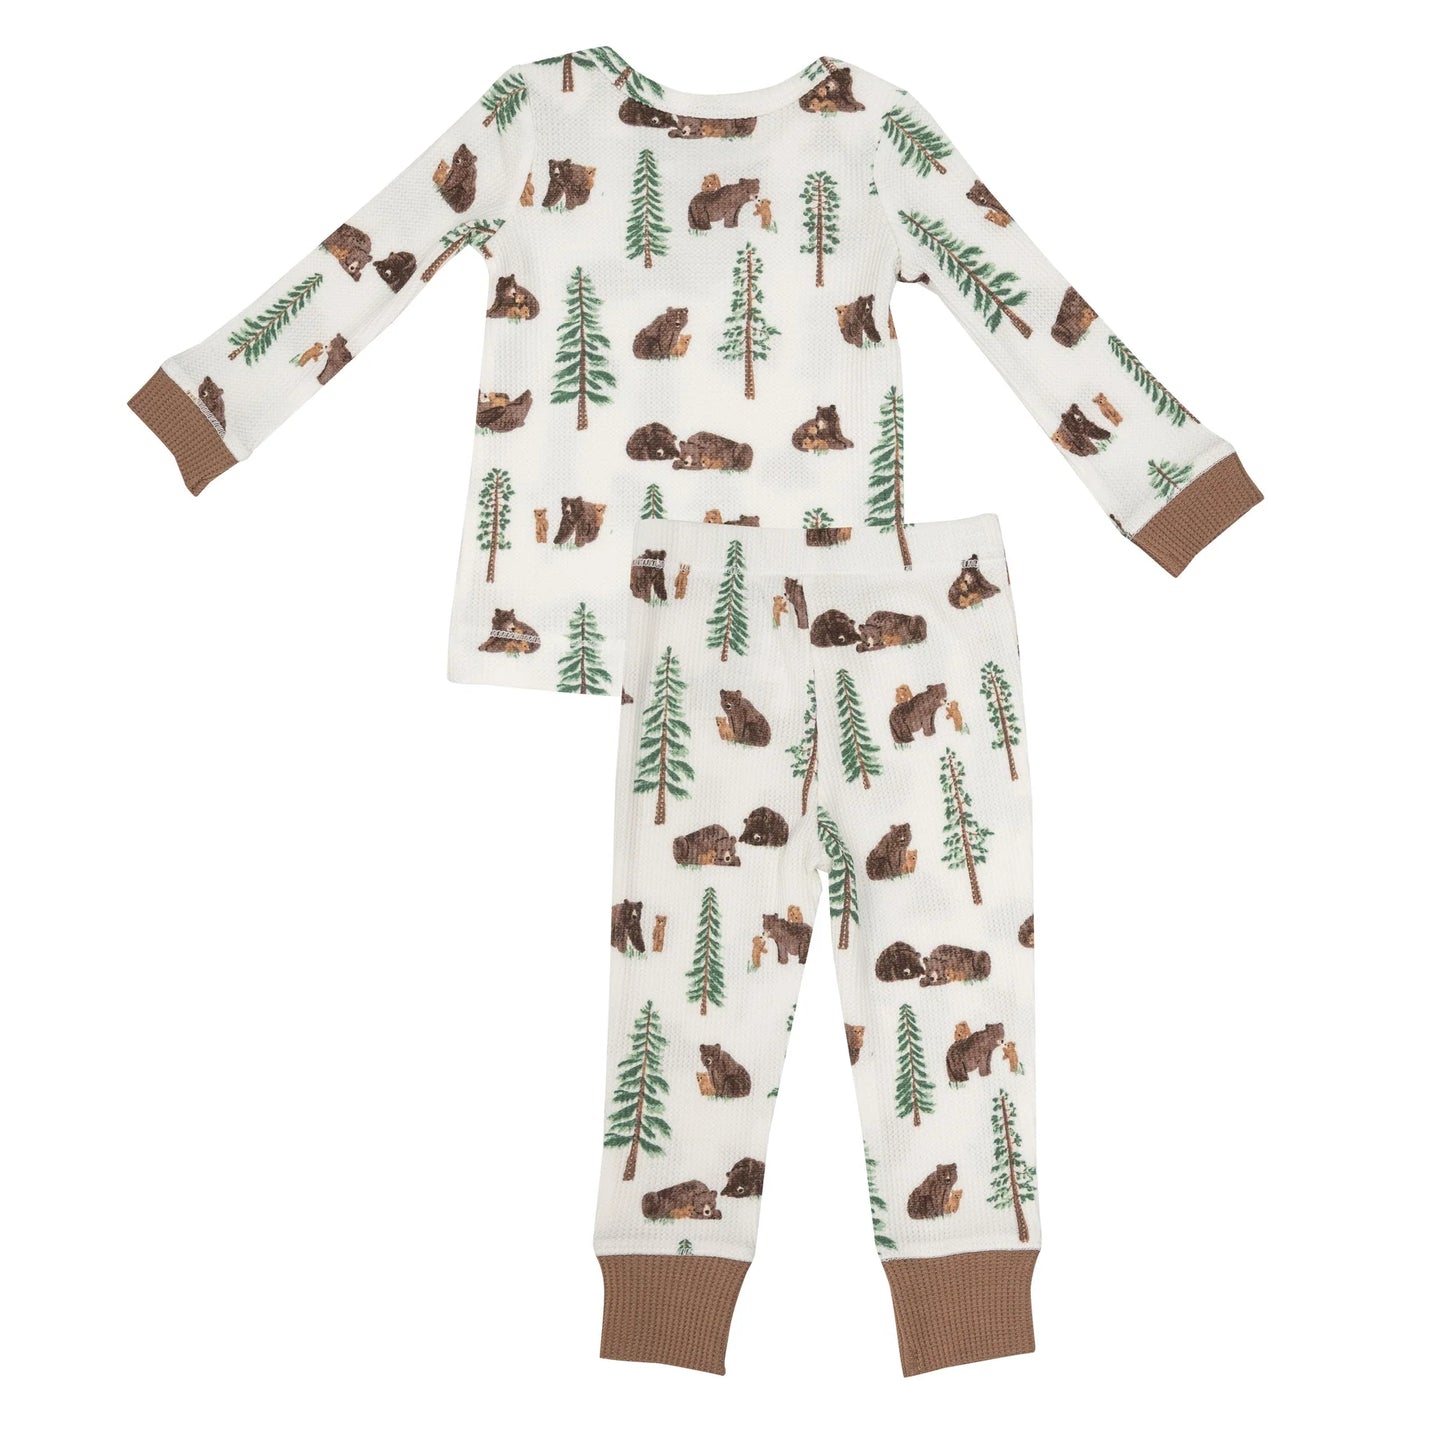 2 Piece Pajamas - Brown Bears